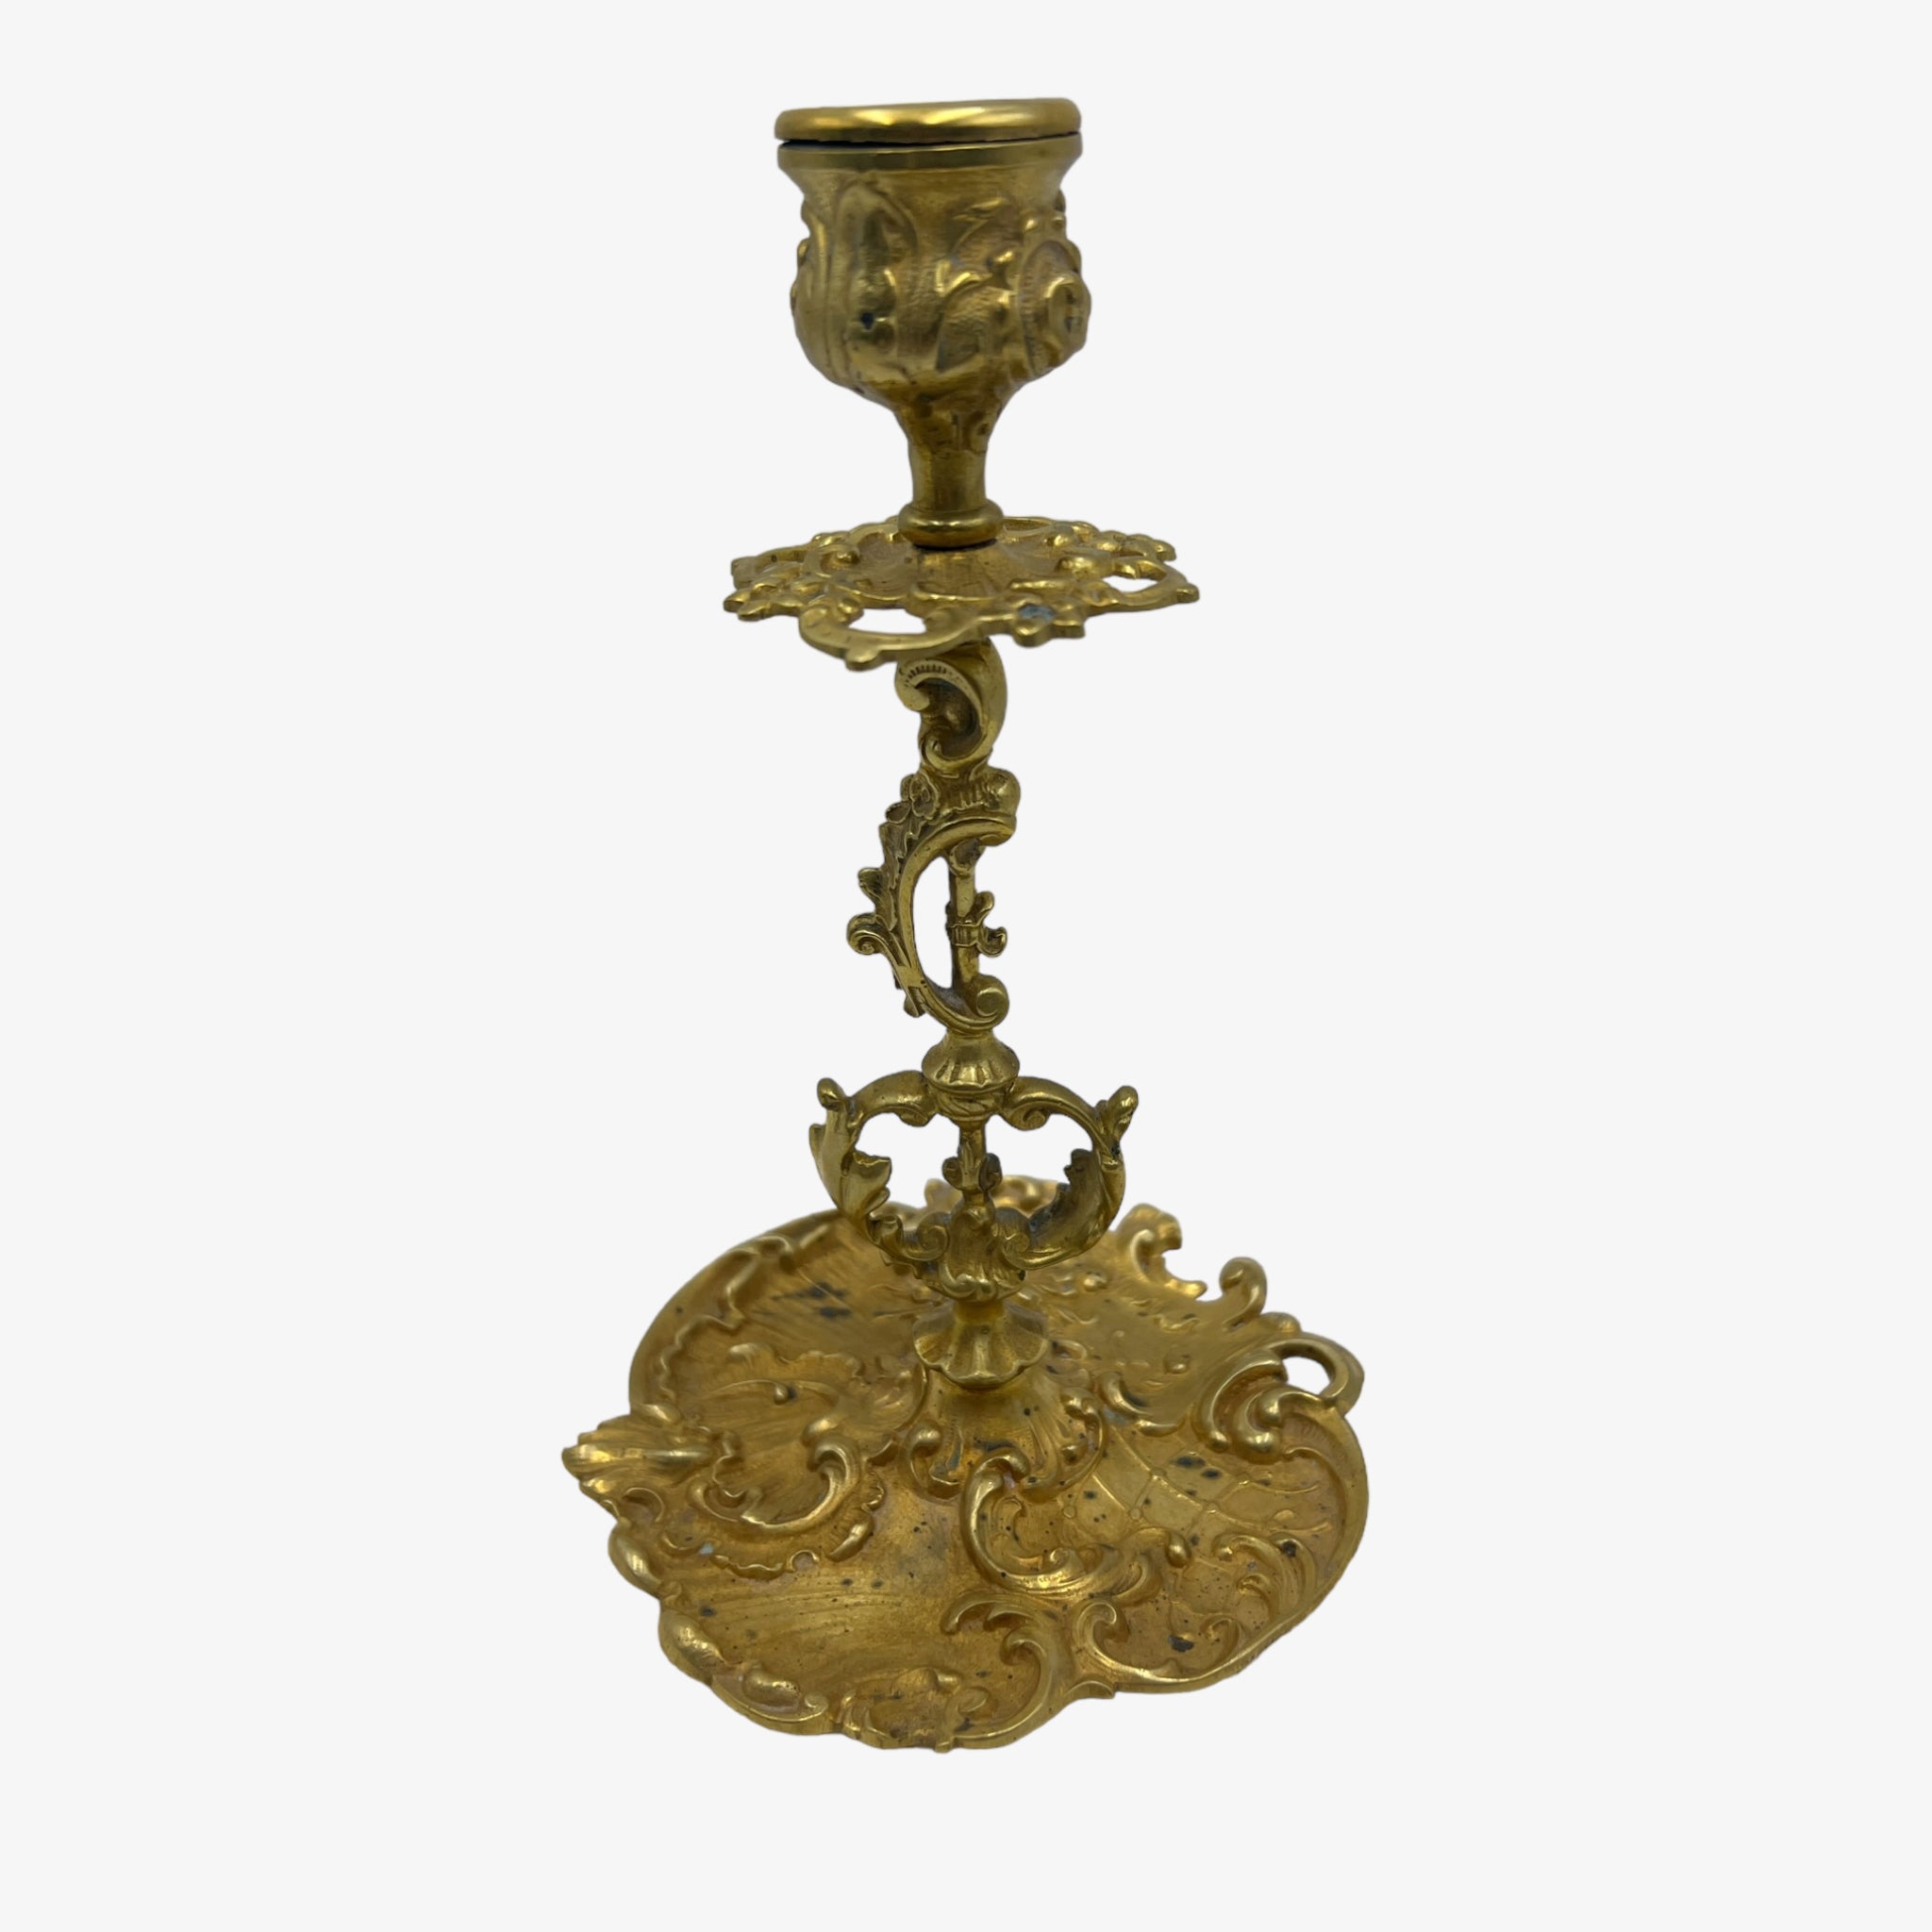 Antique Art Nouveau German Brass Candle Holder